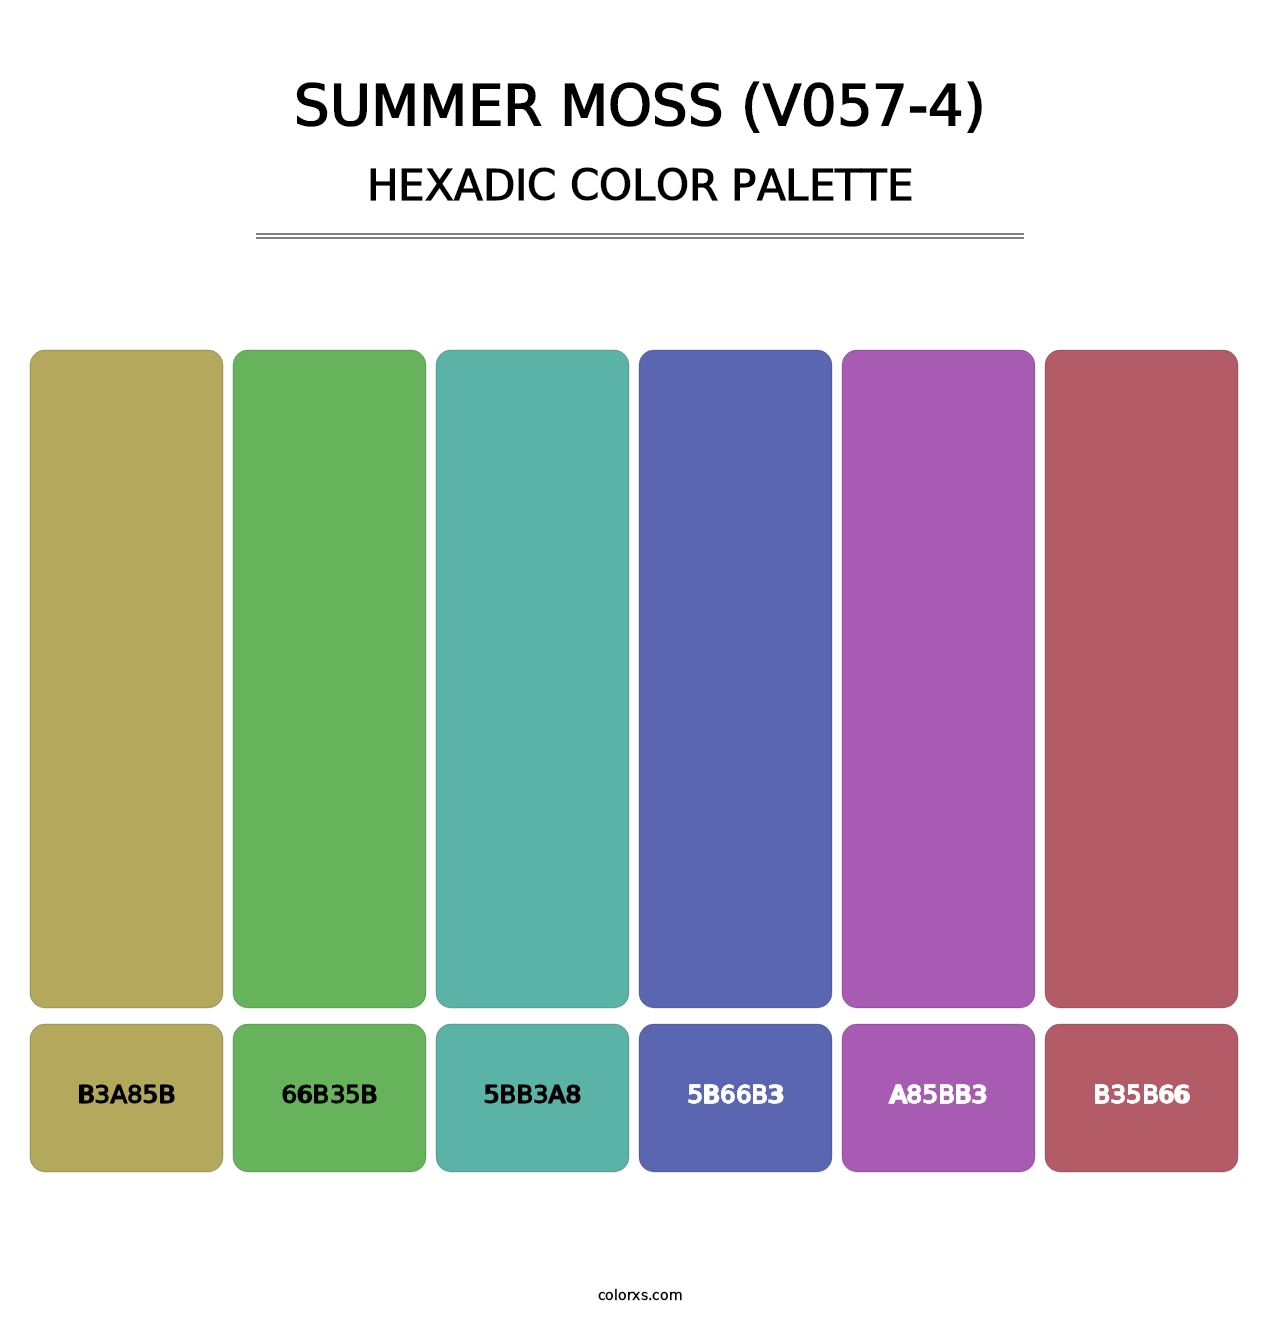 Summer Moss (V057-4) - Hexadic Color Palette